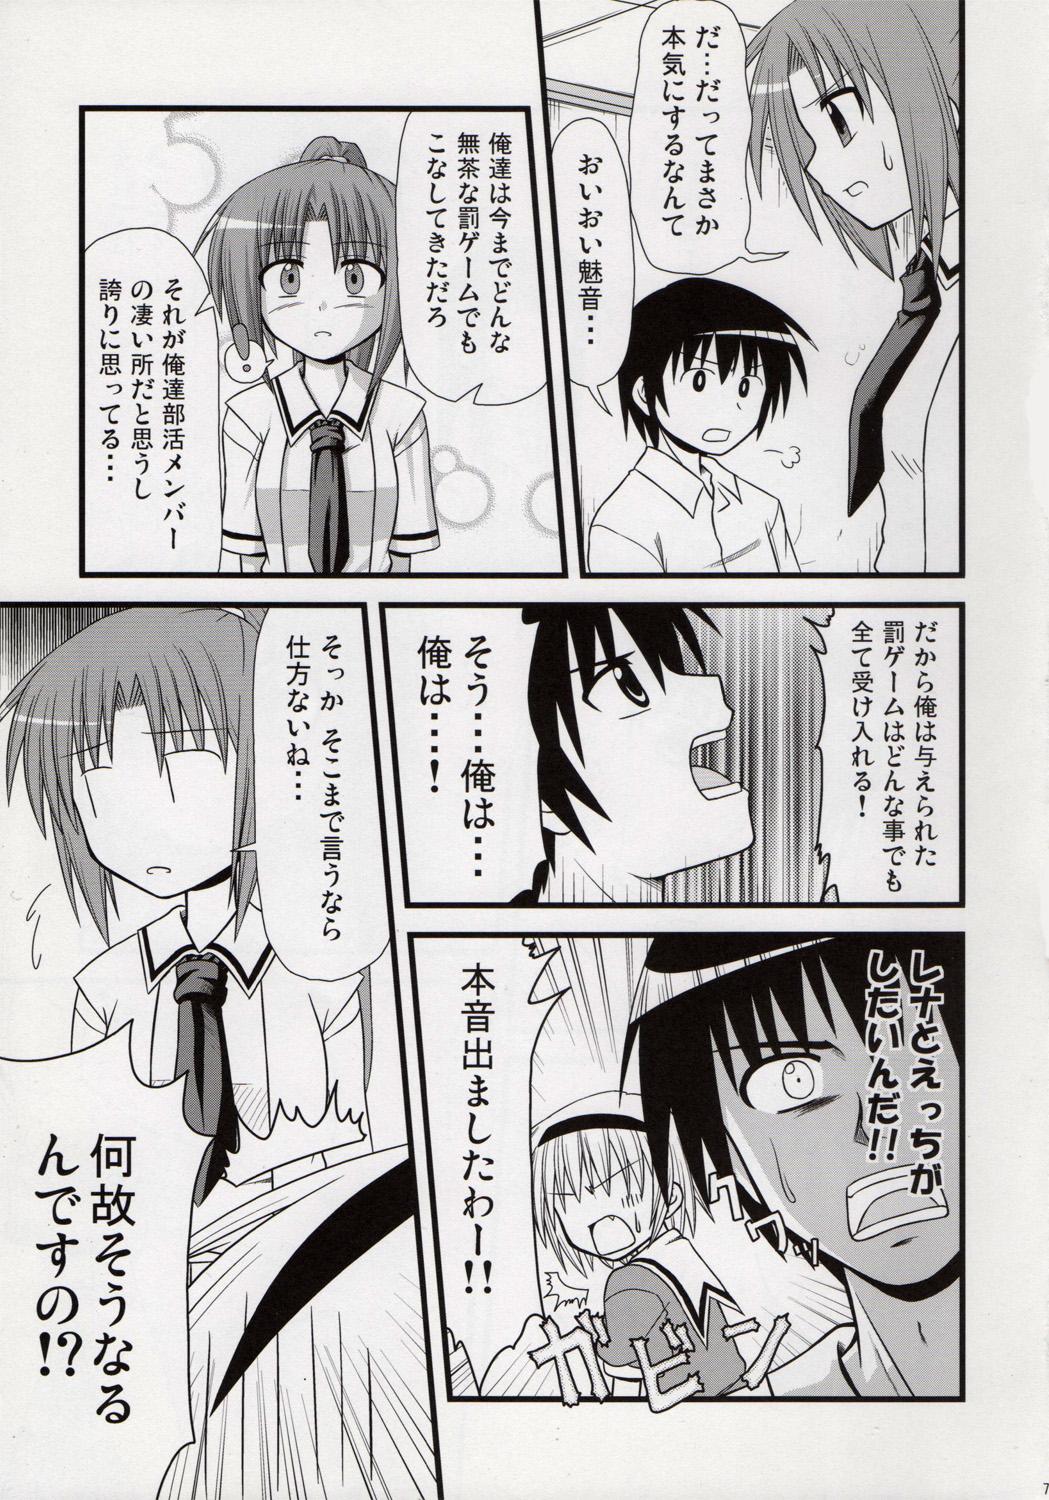 Young Egao, Oppappi, Peace - Higurashi no naku koro ni Escort - Page 6